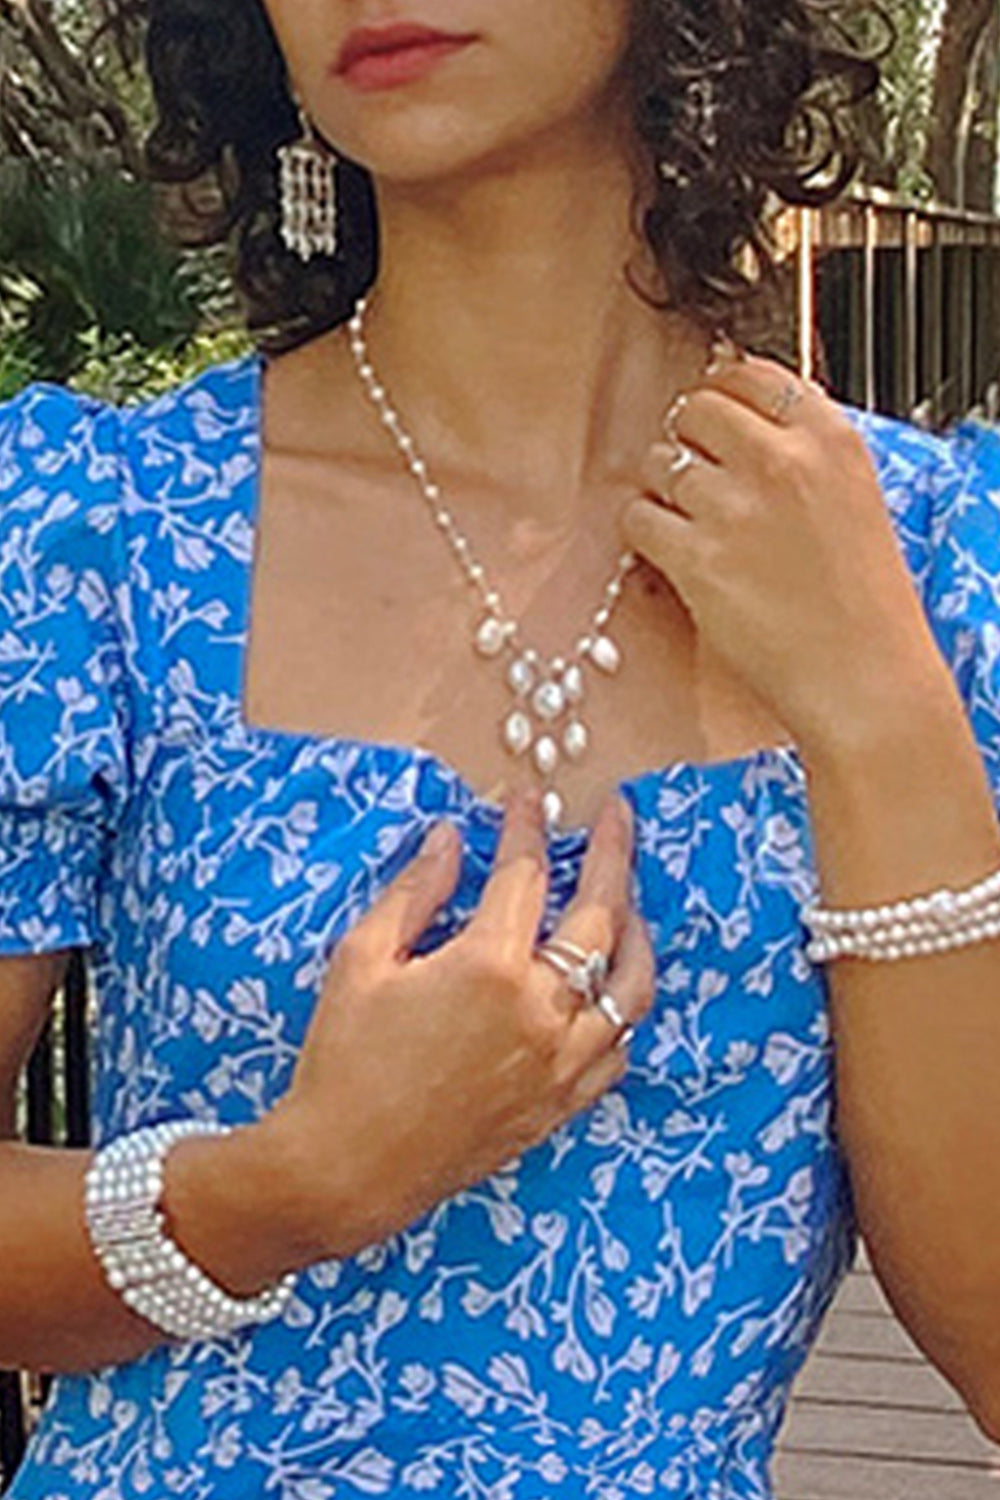 Sivalya Cascade Pearls Chandelier Earrings Sterling Silver - Ivory